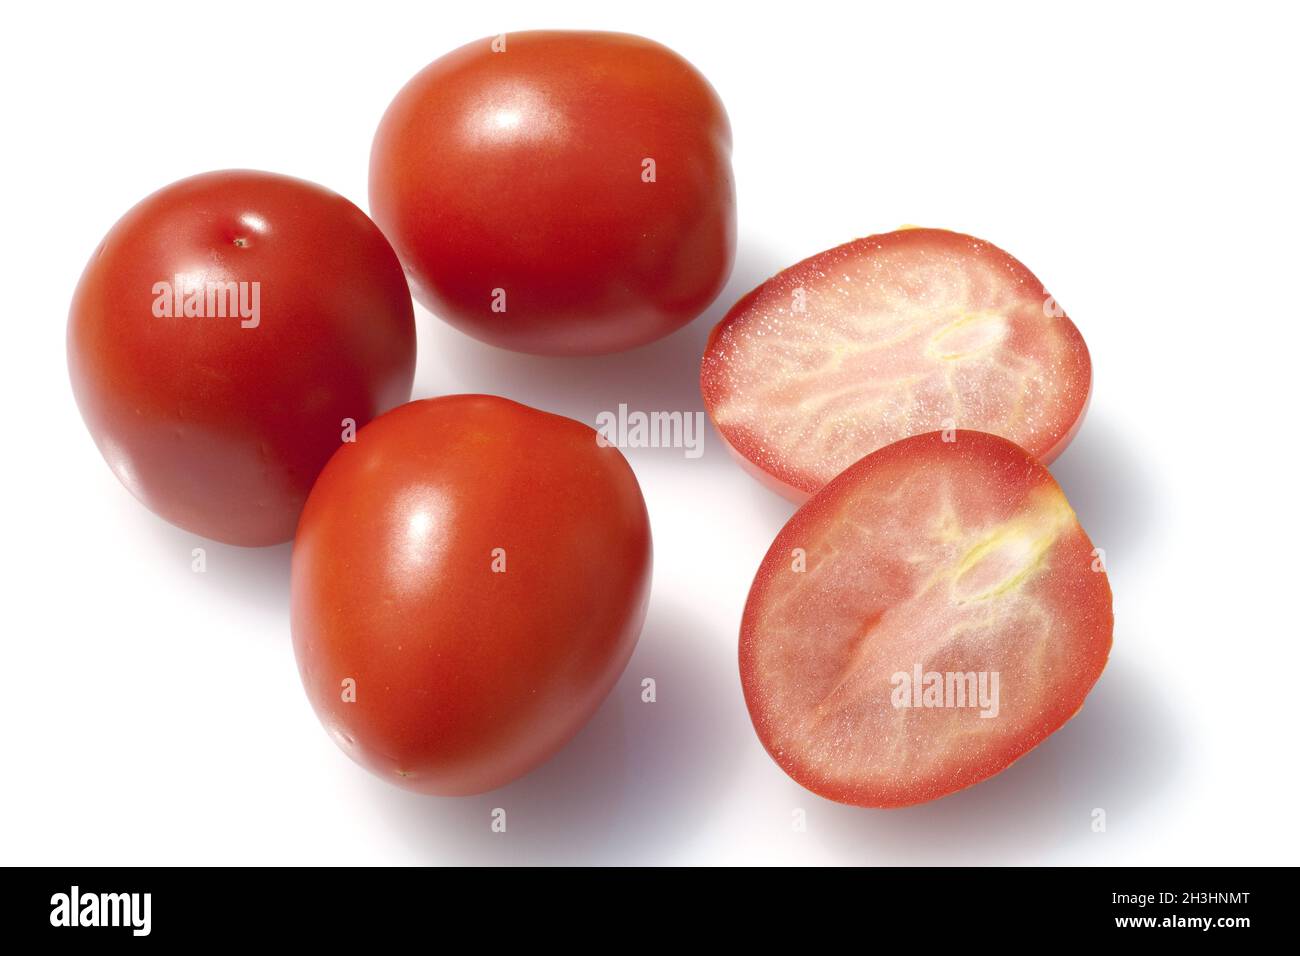 Roma-Tomaten, Romatomaten, Lycopersicon esculentum; Stock Photo